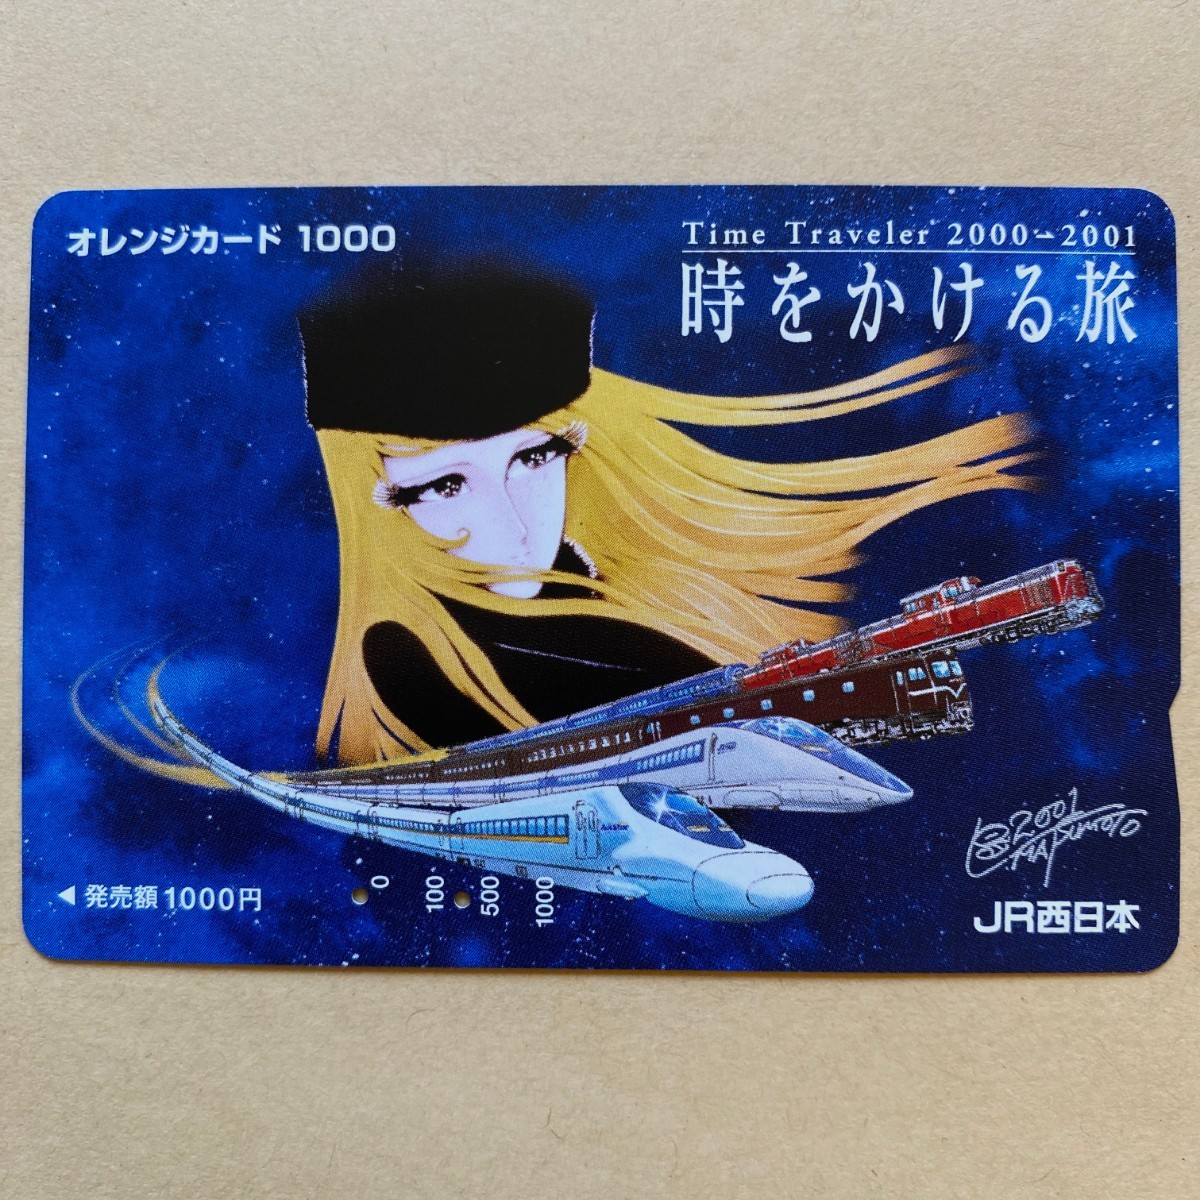 【使用済】 オレンジカード JR西日本 松本零士 時をかける旅 _画像1